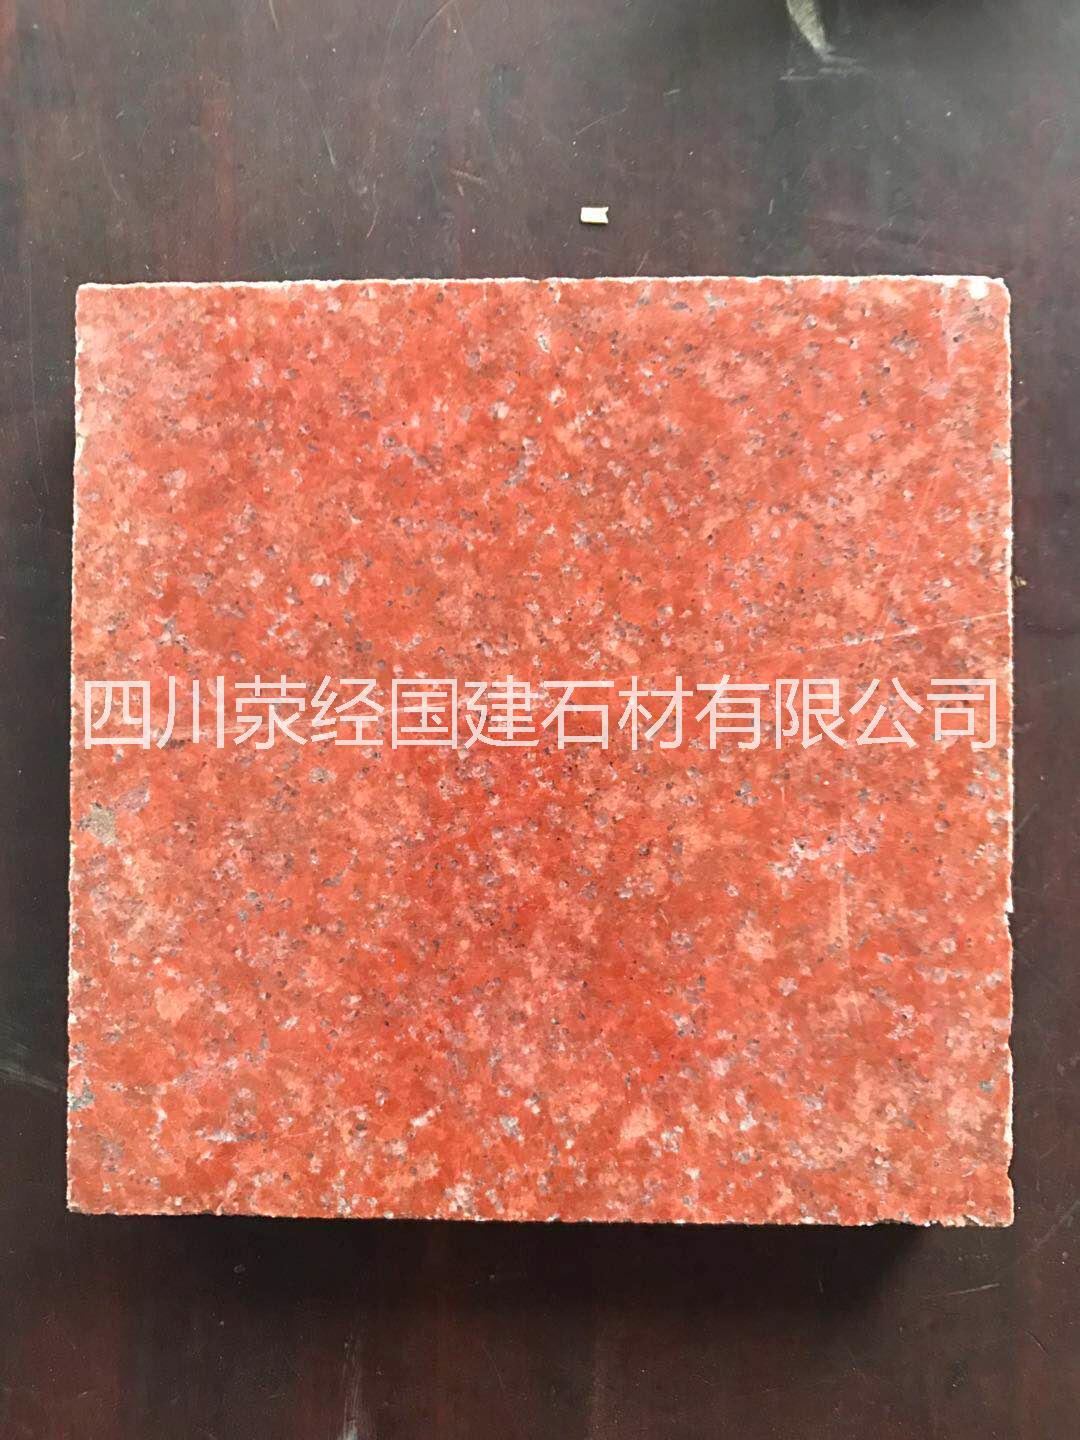 中国红光面中国红光面供应商中国红光面厂家直销中国红光面价格